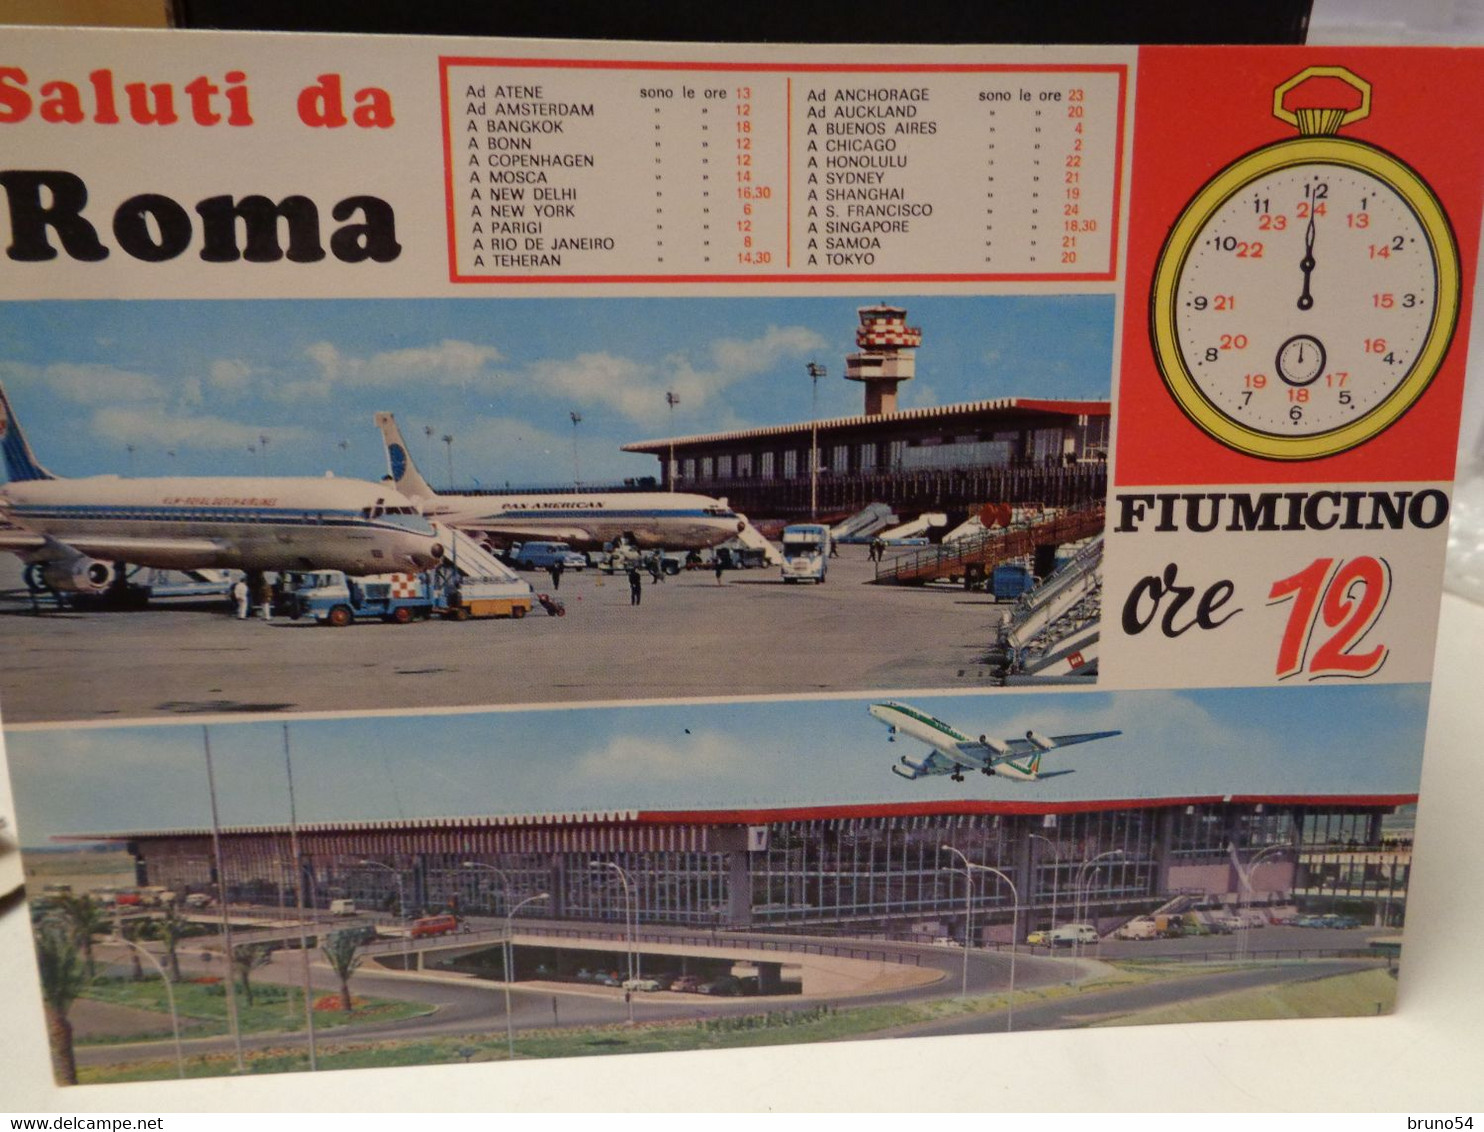 Cartolina Saluti Da Roma Fiumicino Ore 12 , Tabella Delle Destinazioni , Aere KLM E Alitalia - Transportmiddelen